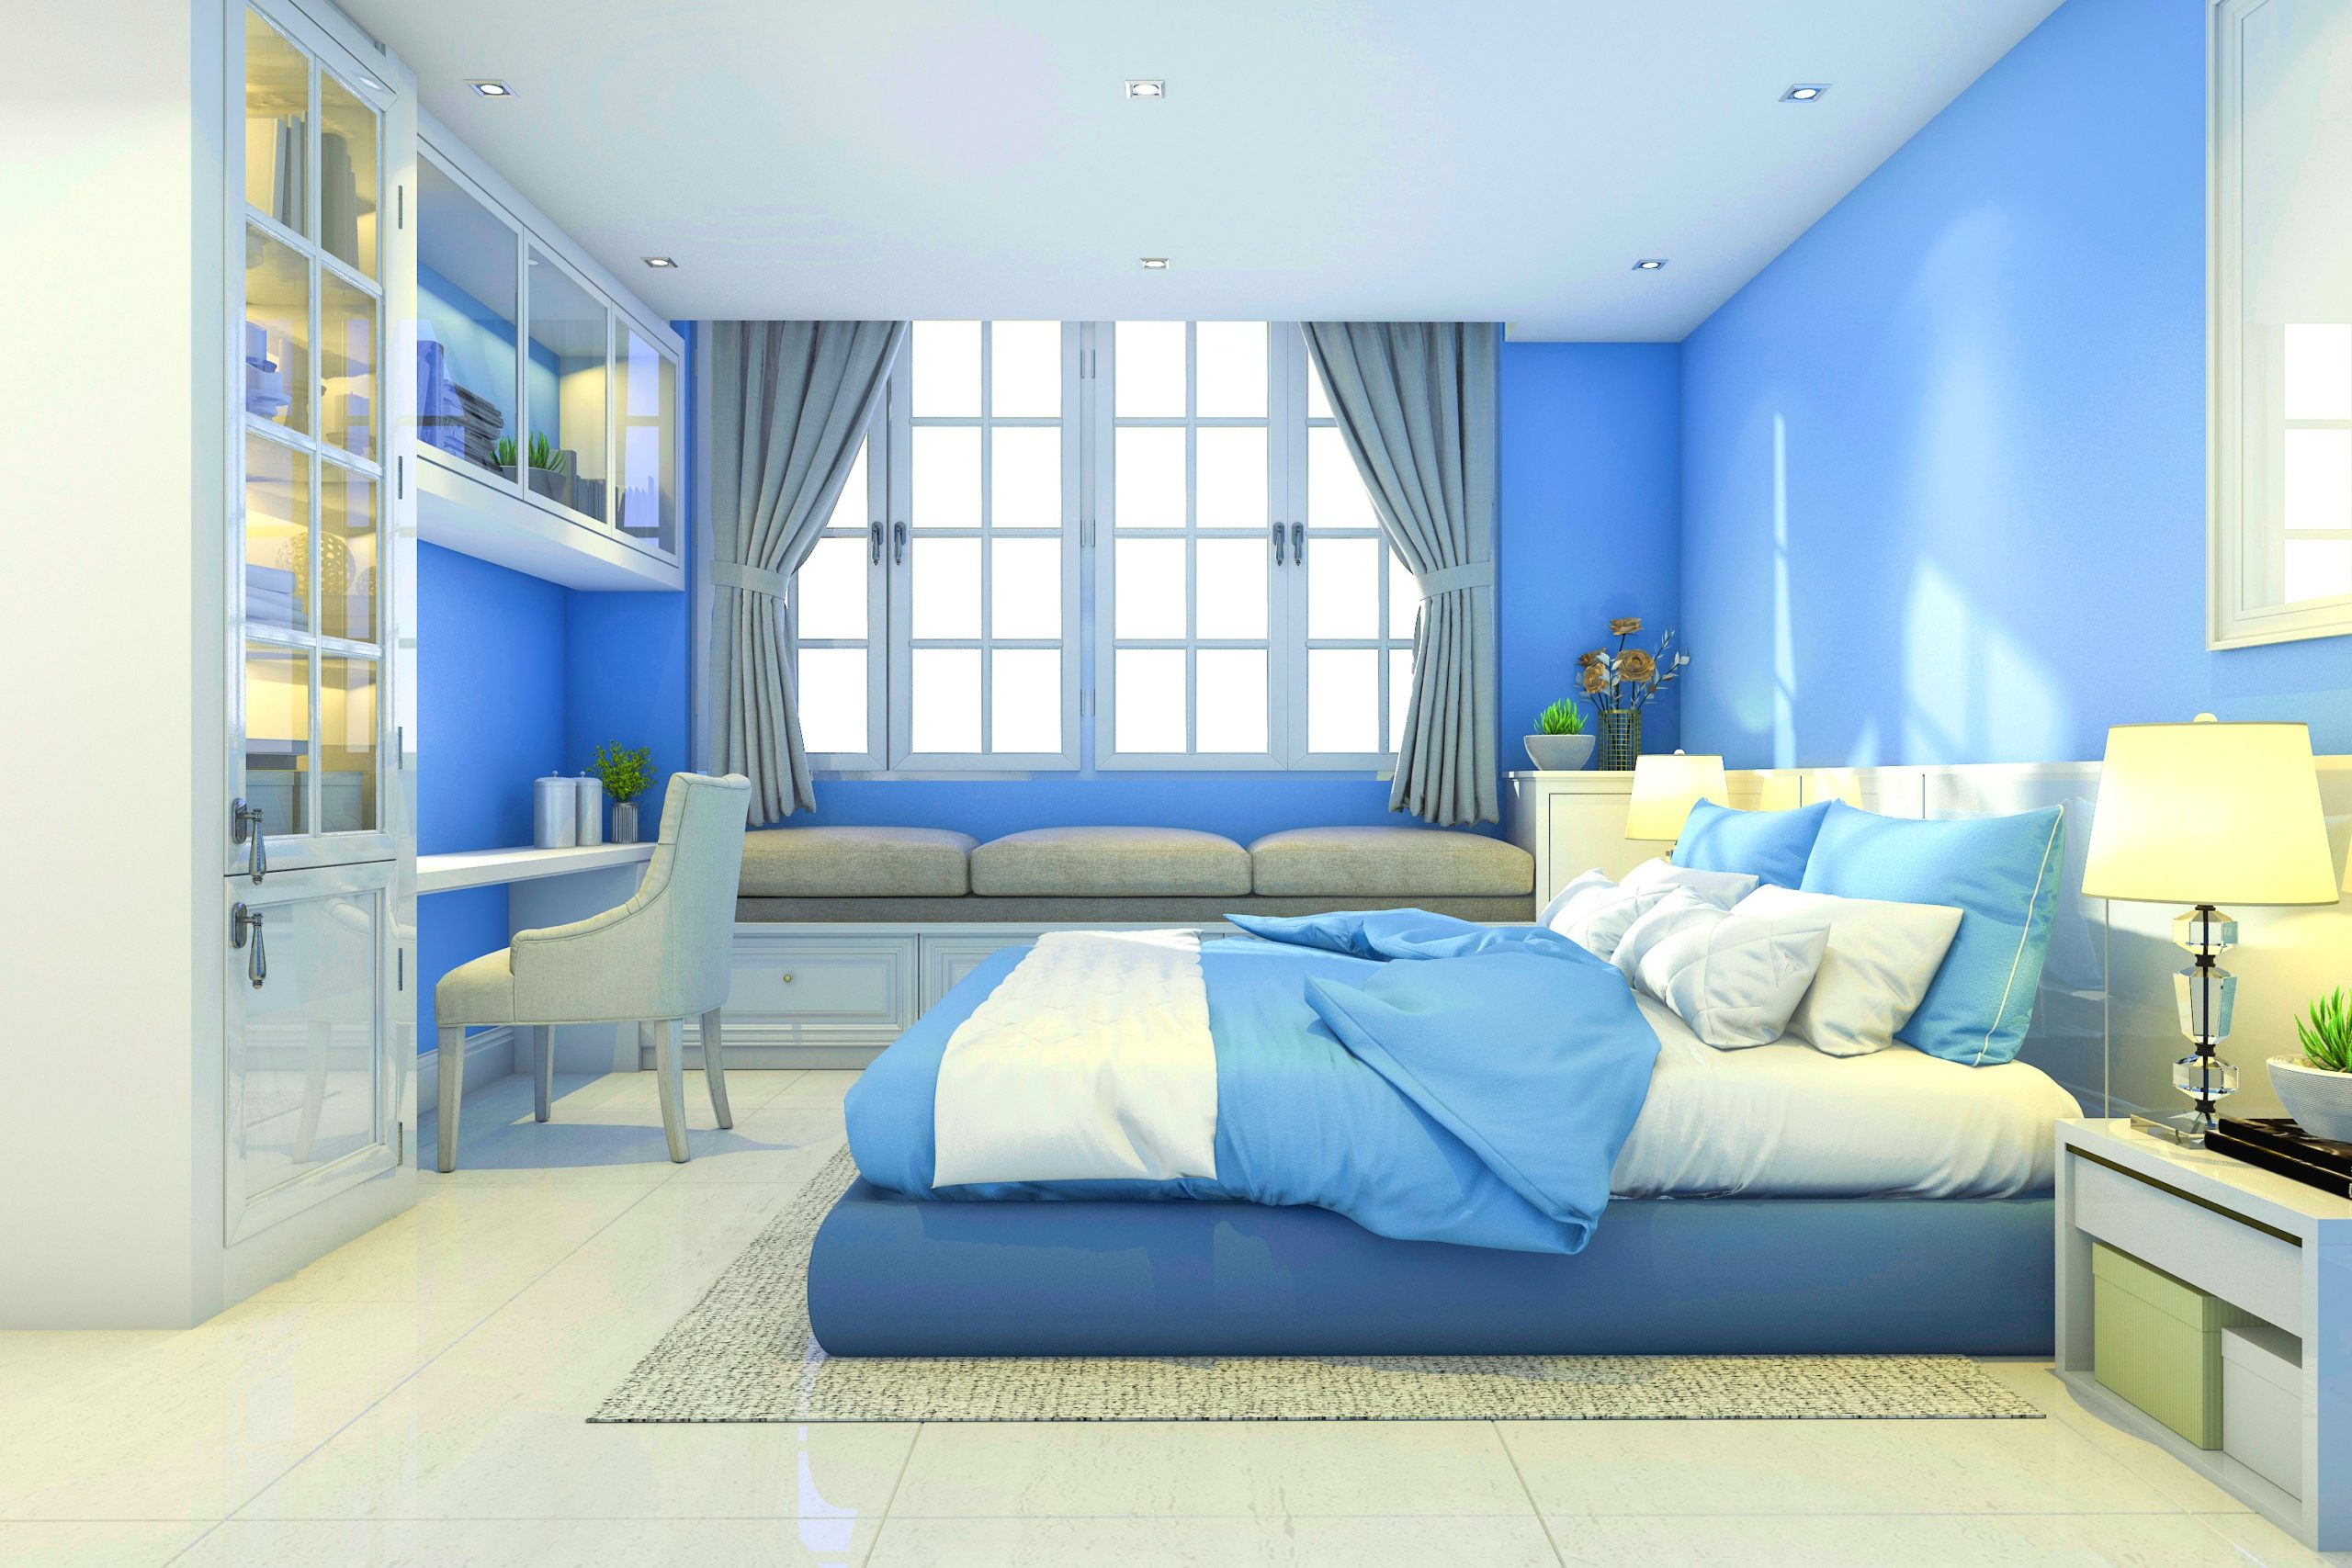 <img src="blue.jpg" alt="blue and white loft bedroom"/> 